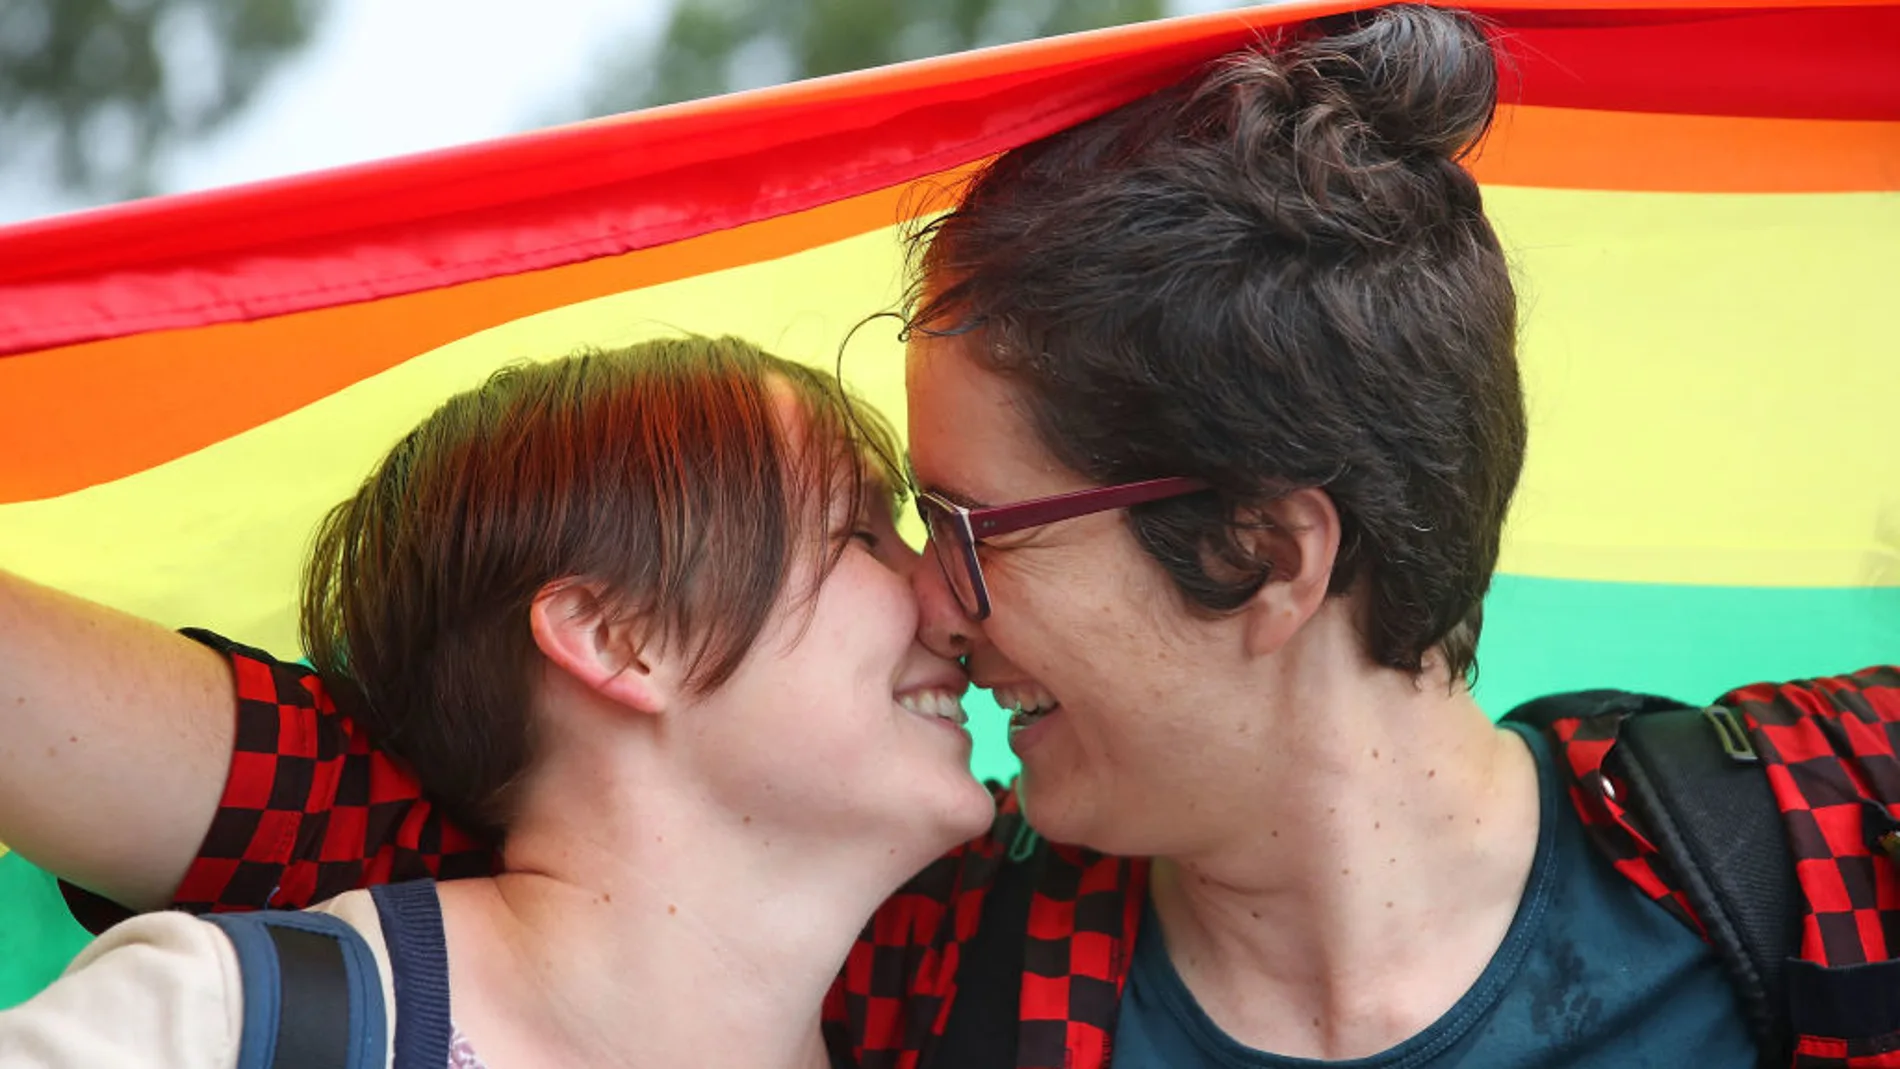 Matrimonio homosexual en España